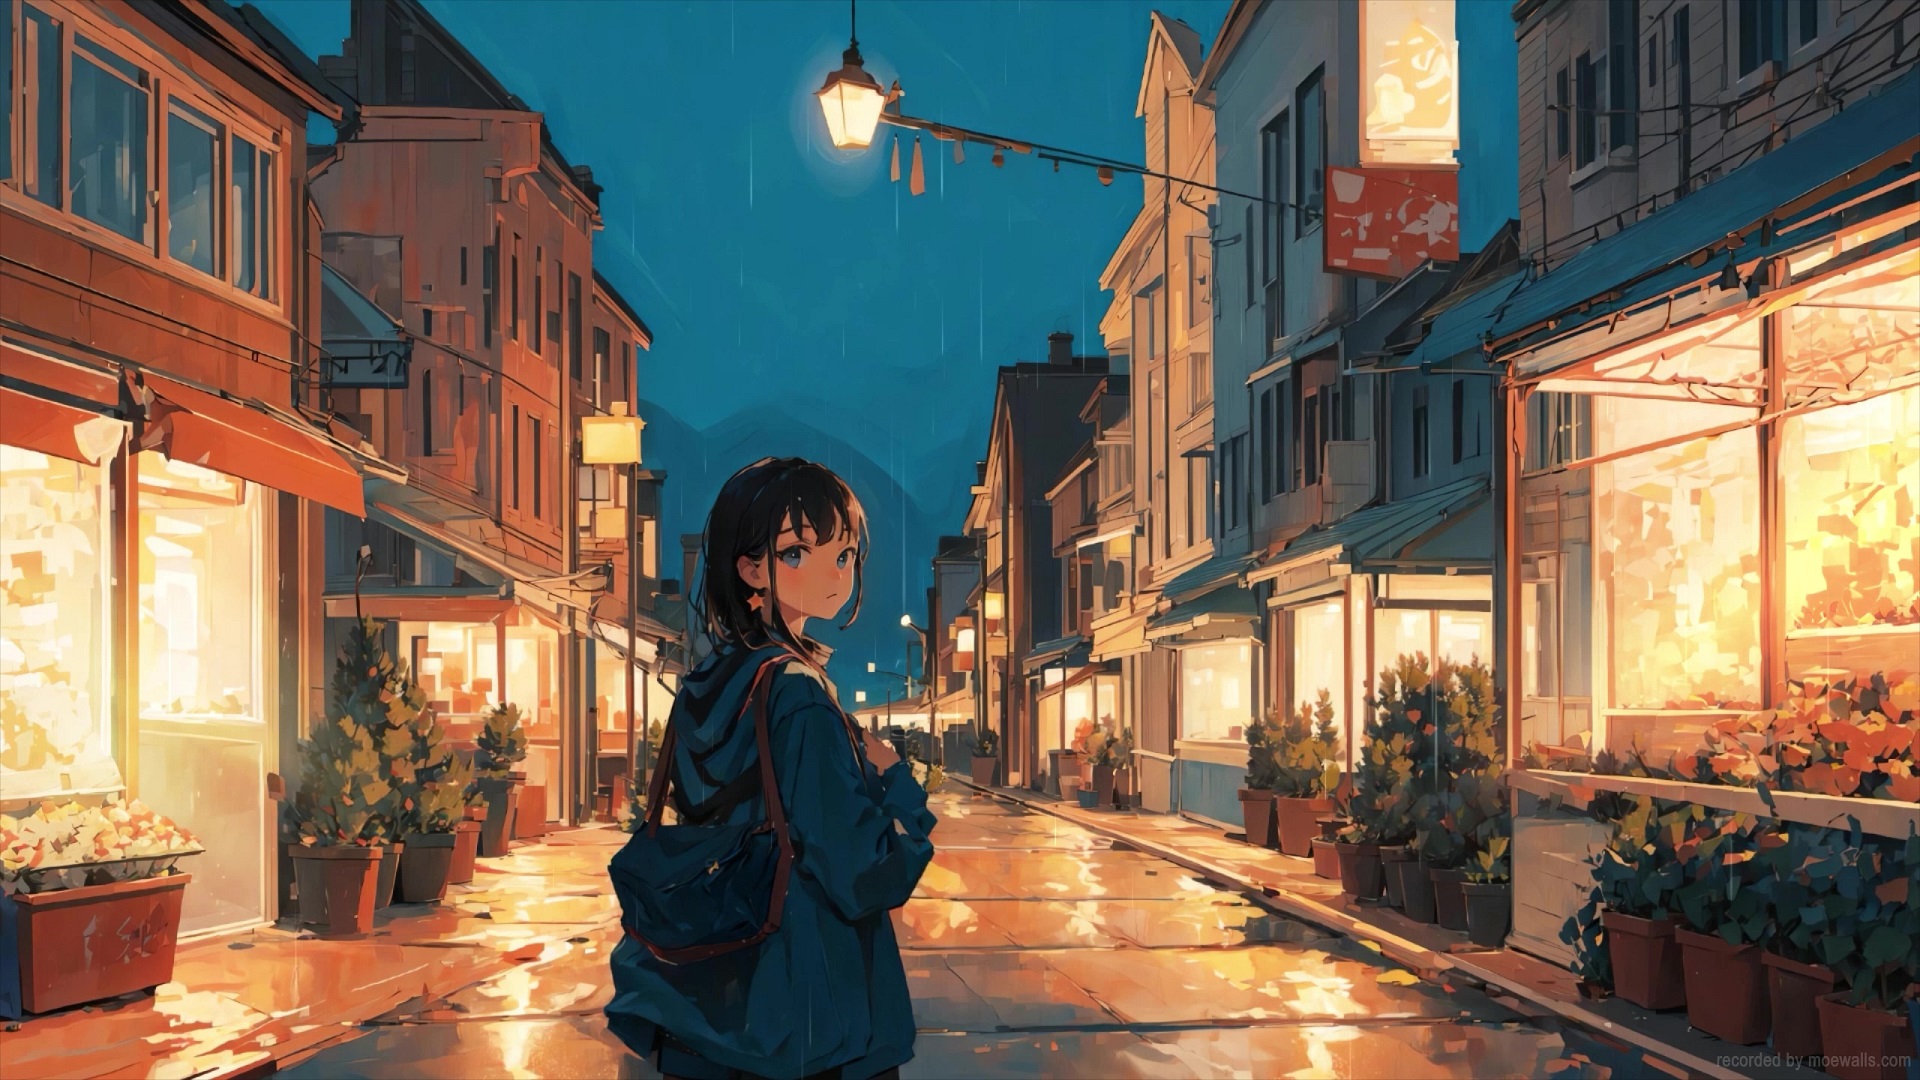 Share 169+ cute aesthetic anime backgrounds - 3tdesign.edu.vn